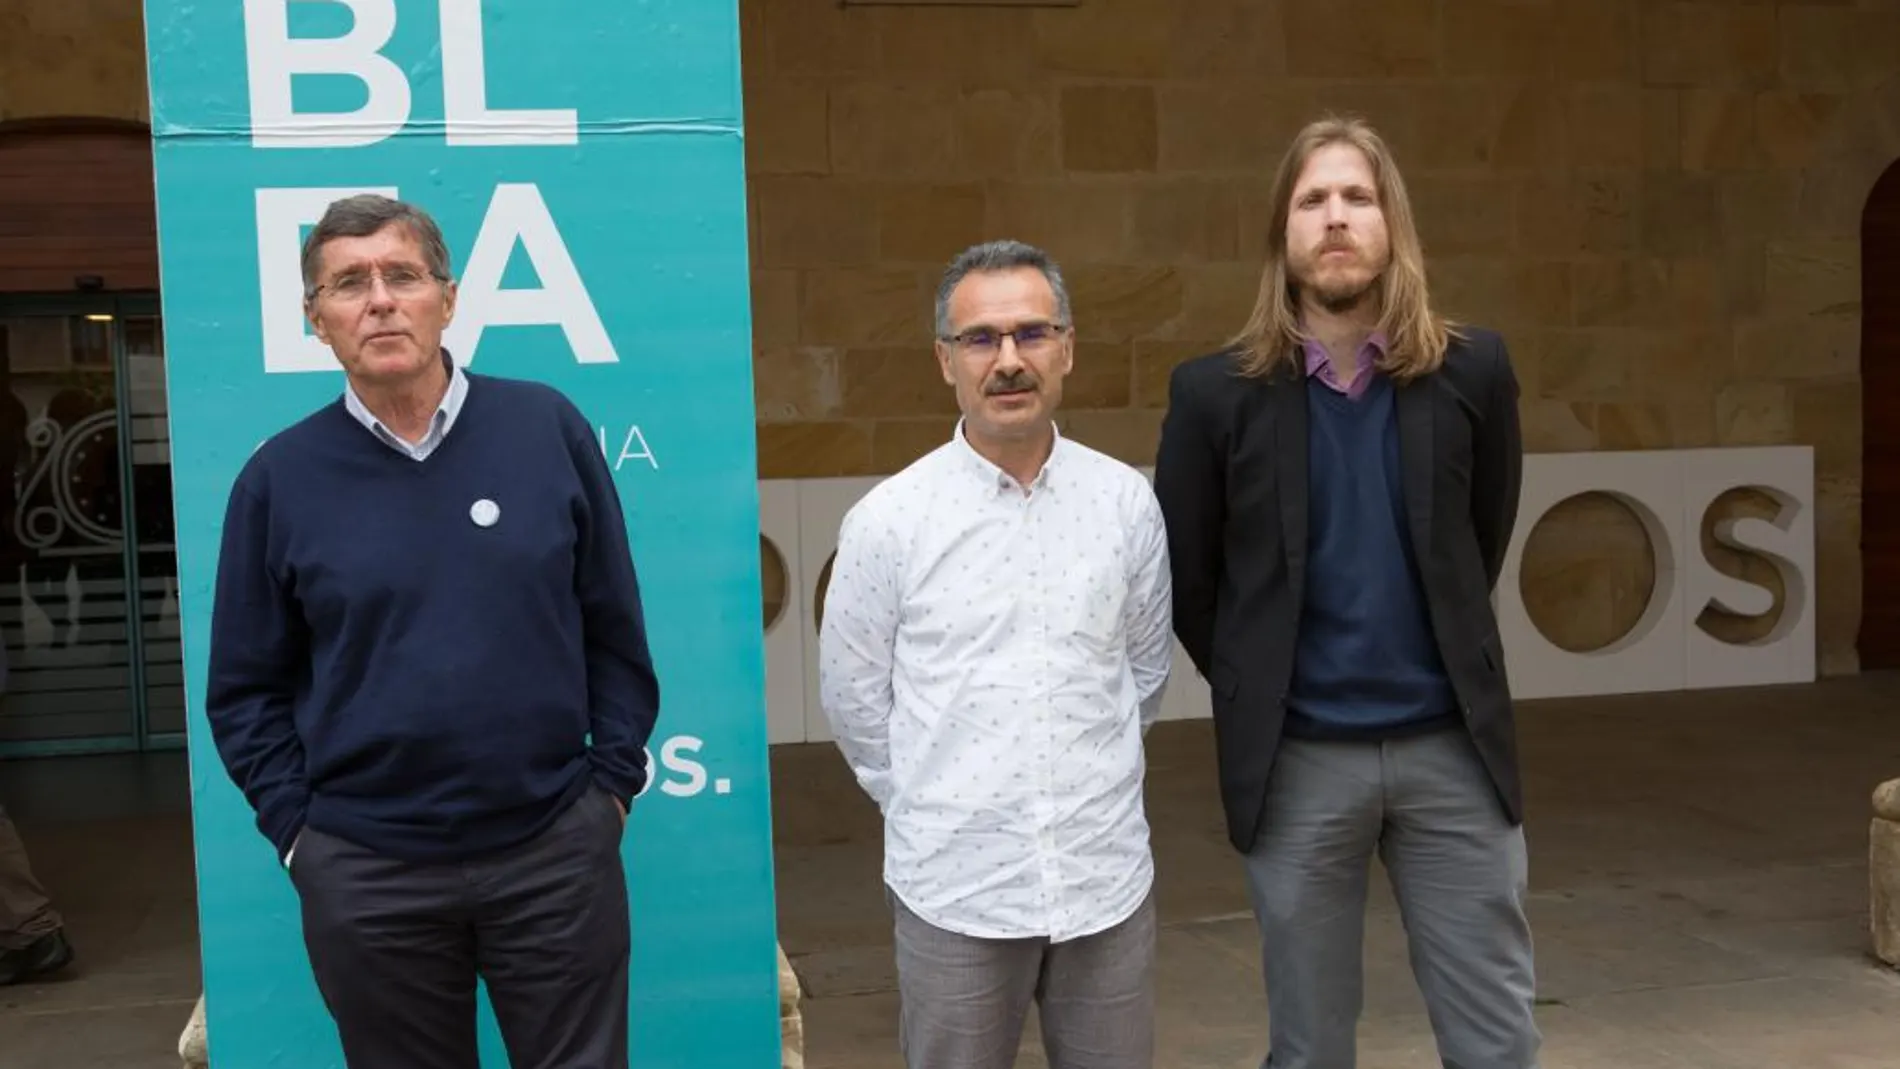 II Asamblea Ciudadana de Podemos Castilla y León, en la que se presentan las candidaturas a la Secretaria General de (I a D) Jean Pierre Lohrer, Nicanor Pastrana y Pablo Fernández